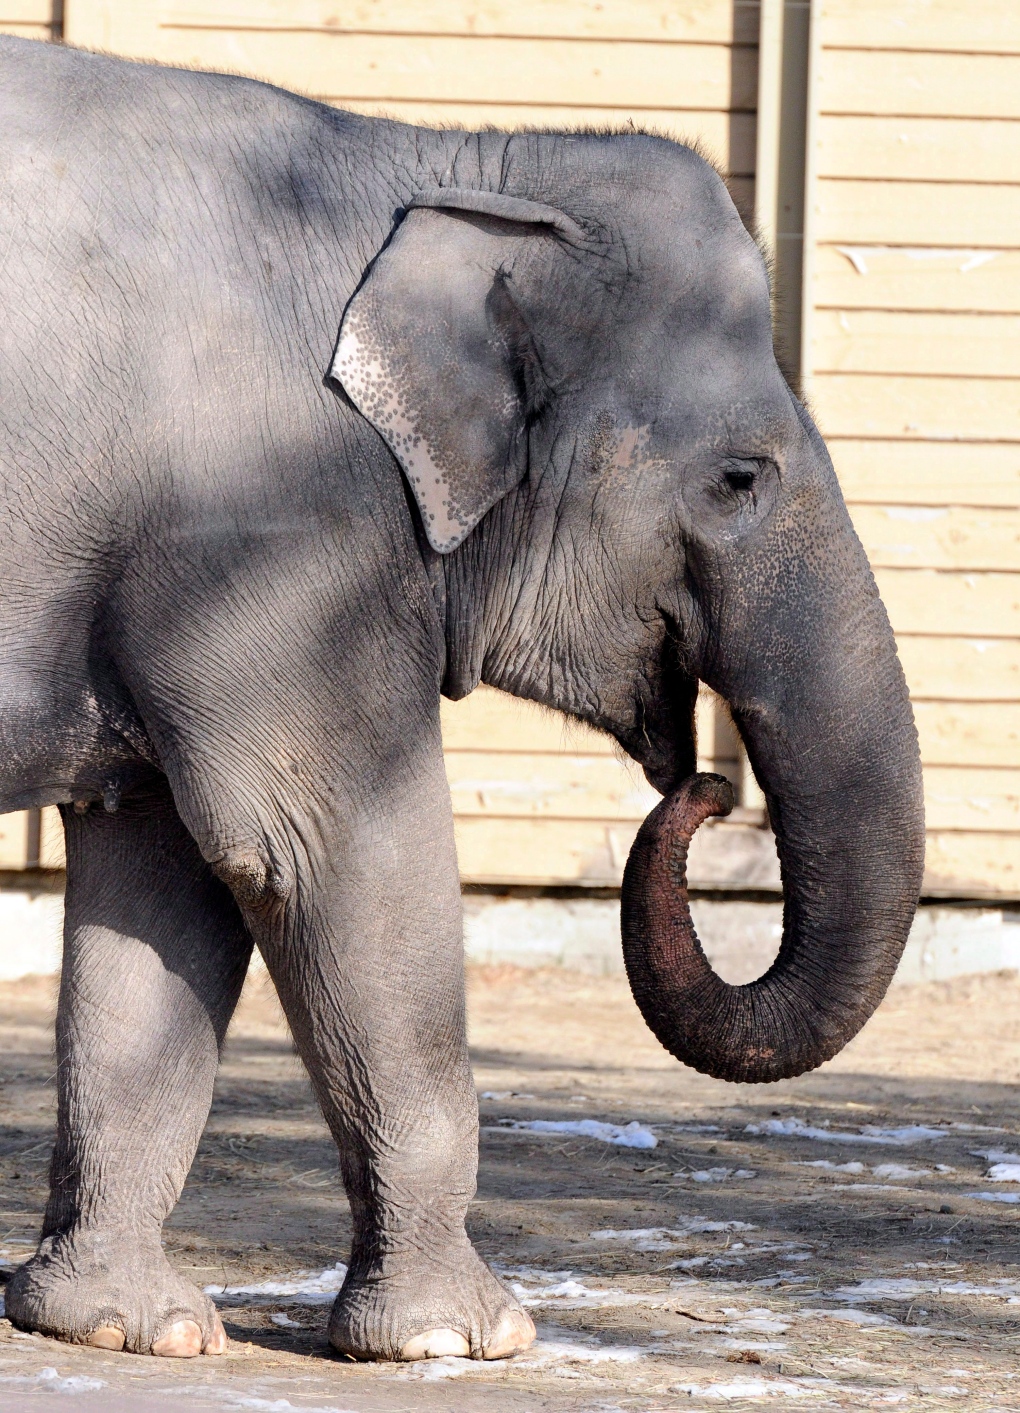 Calgary Zoo elephants